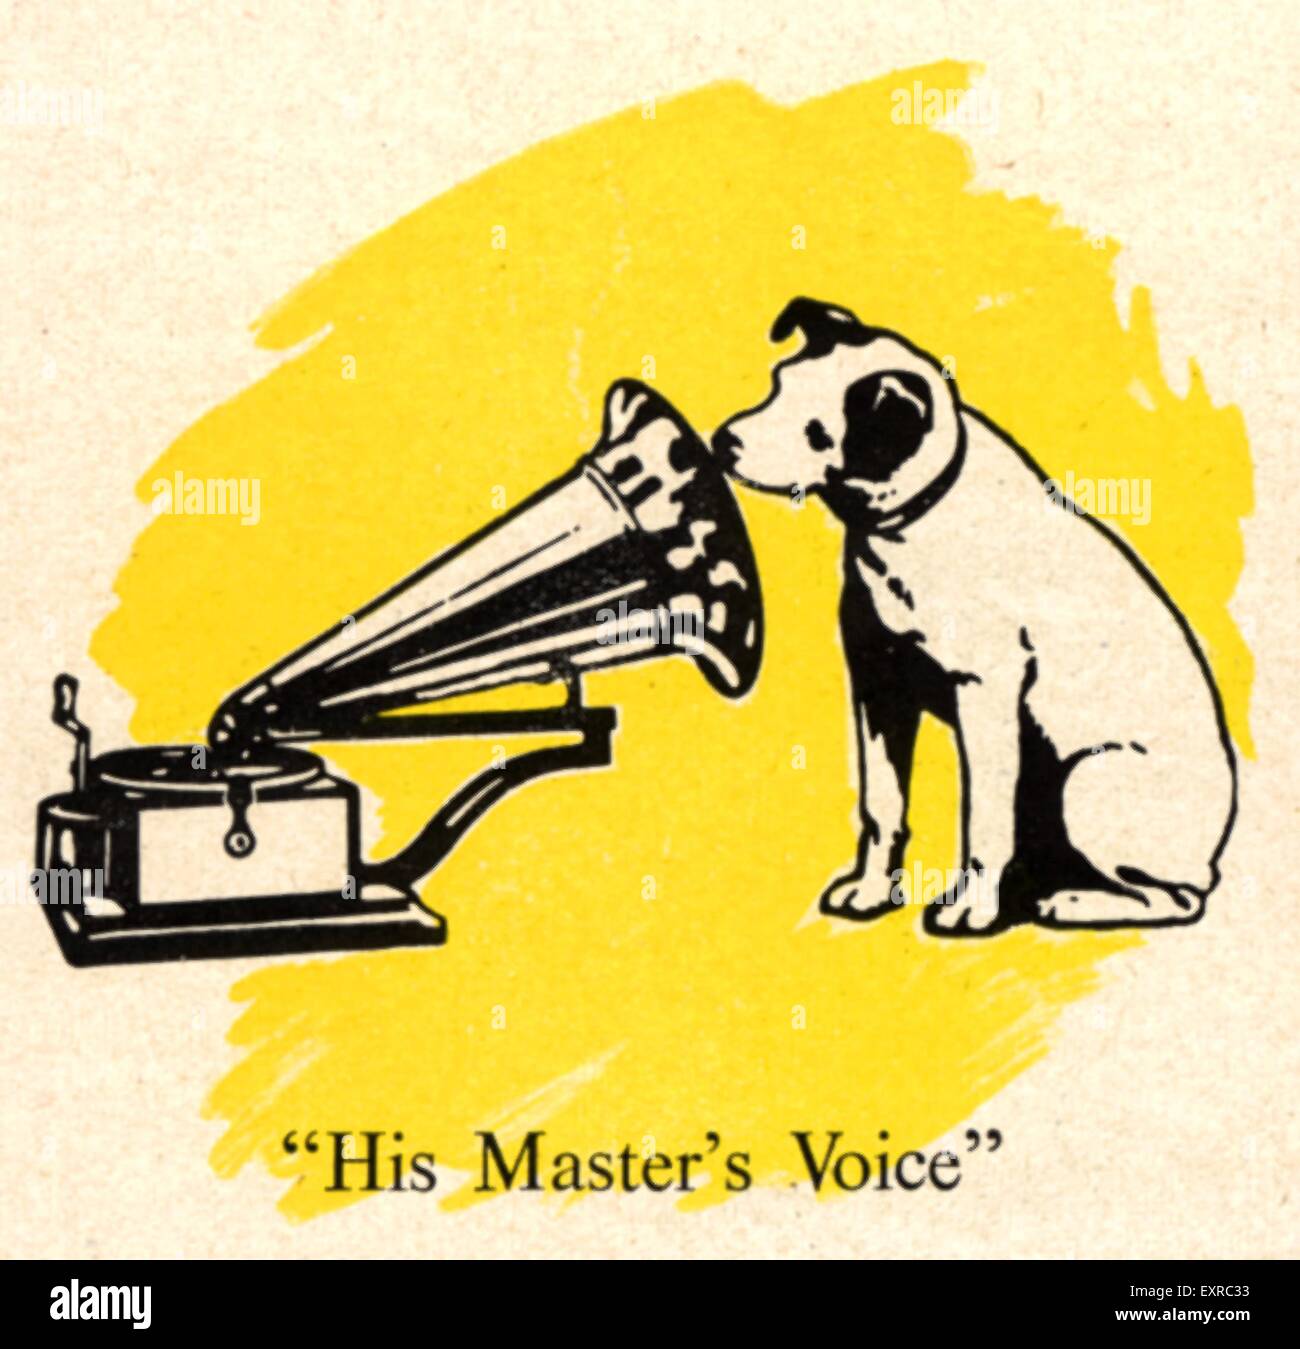 1940s USA HMV (His Master's Voice) Magazine Advert (detail) Stock Photo